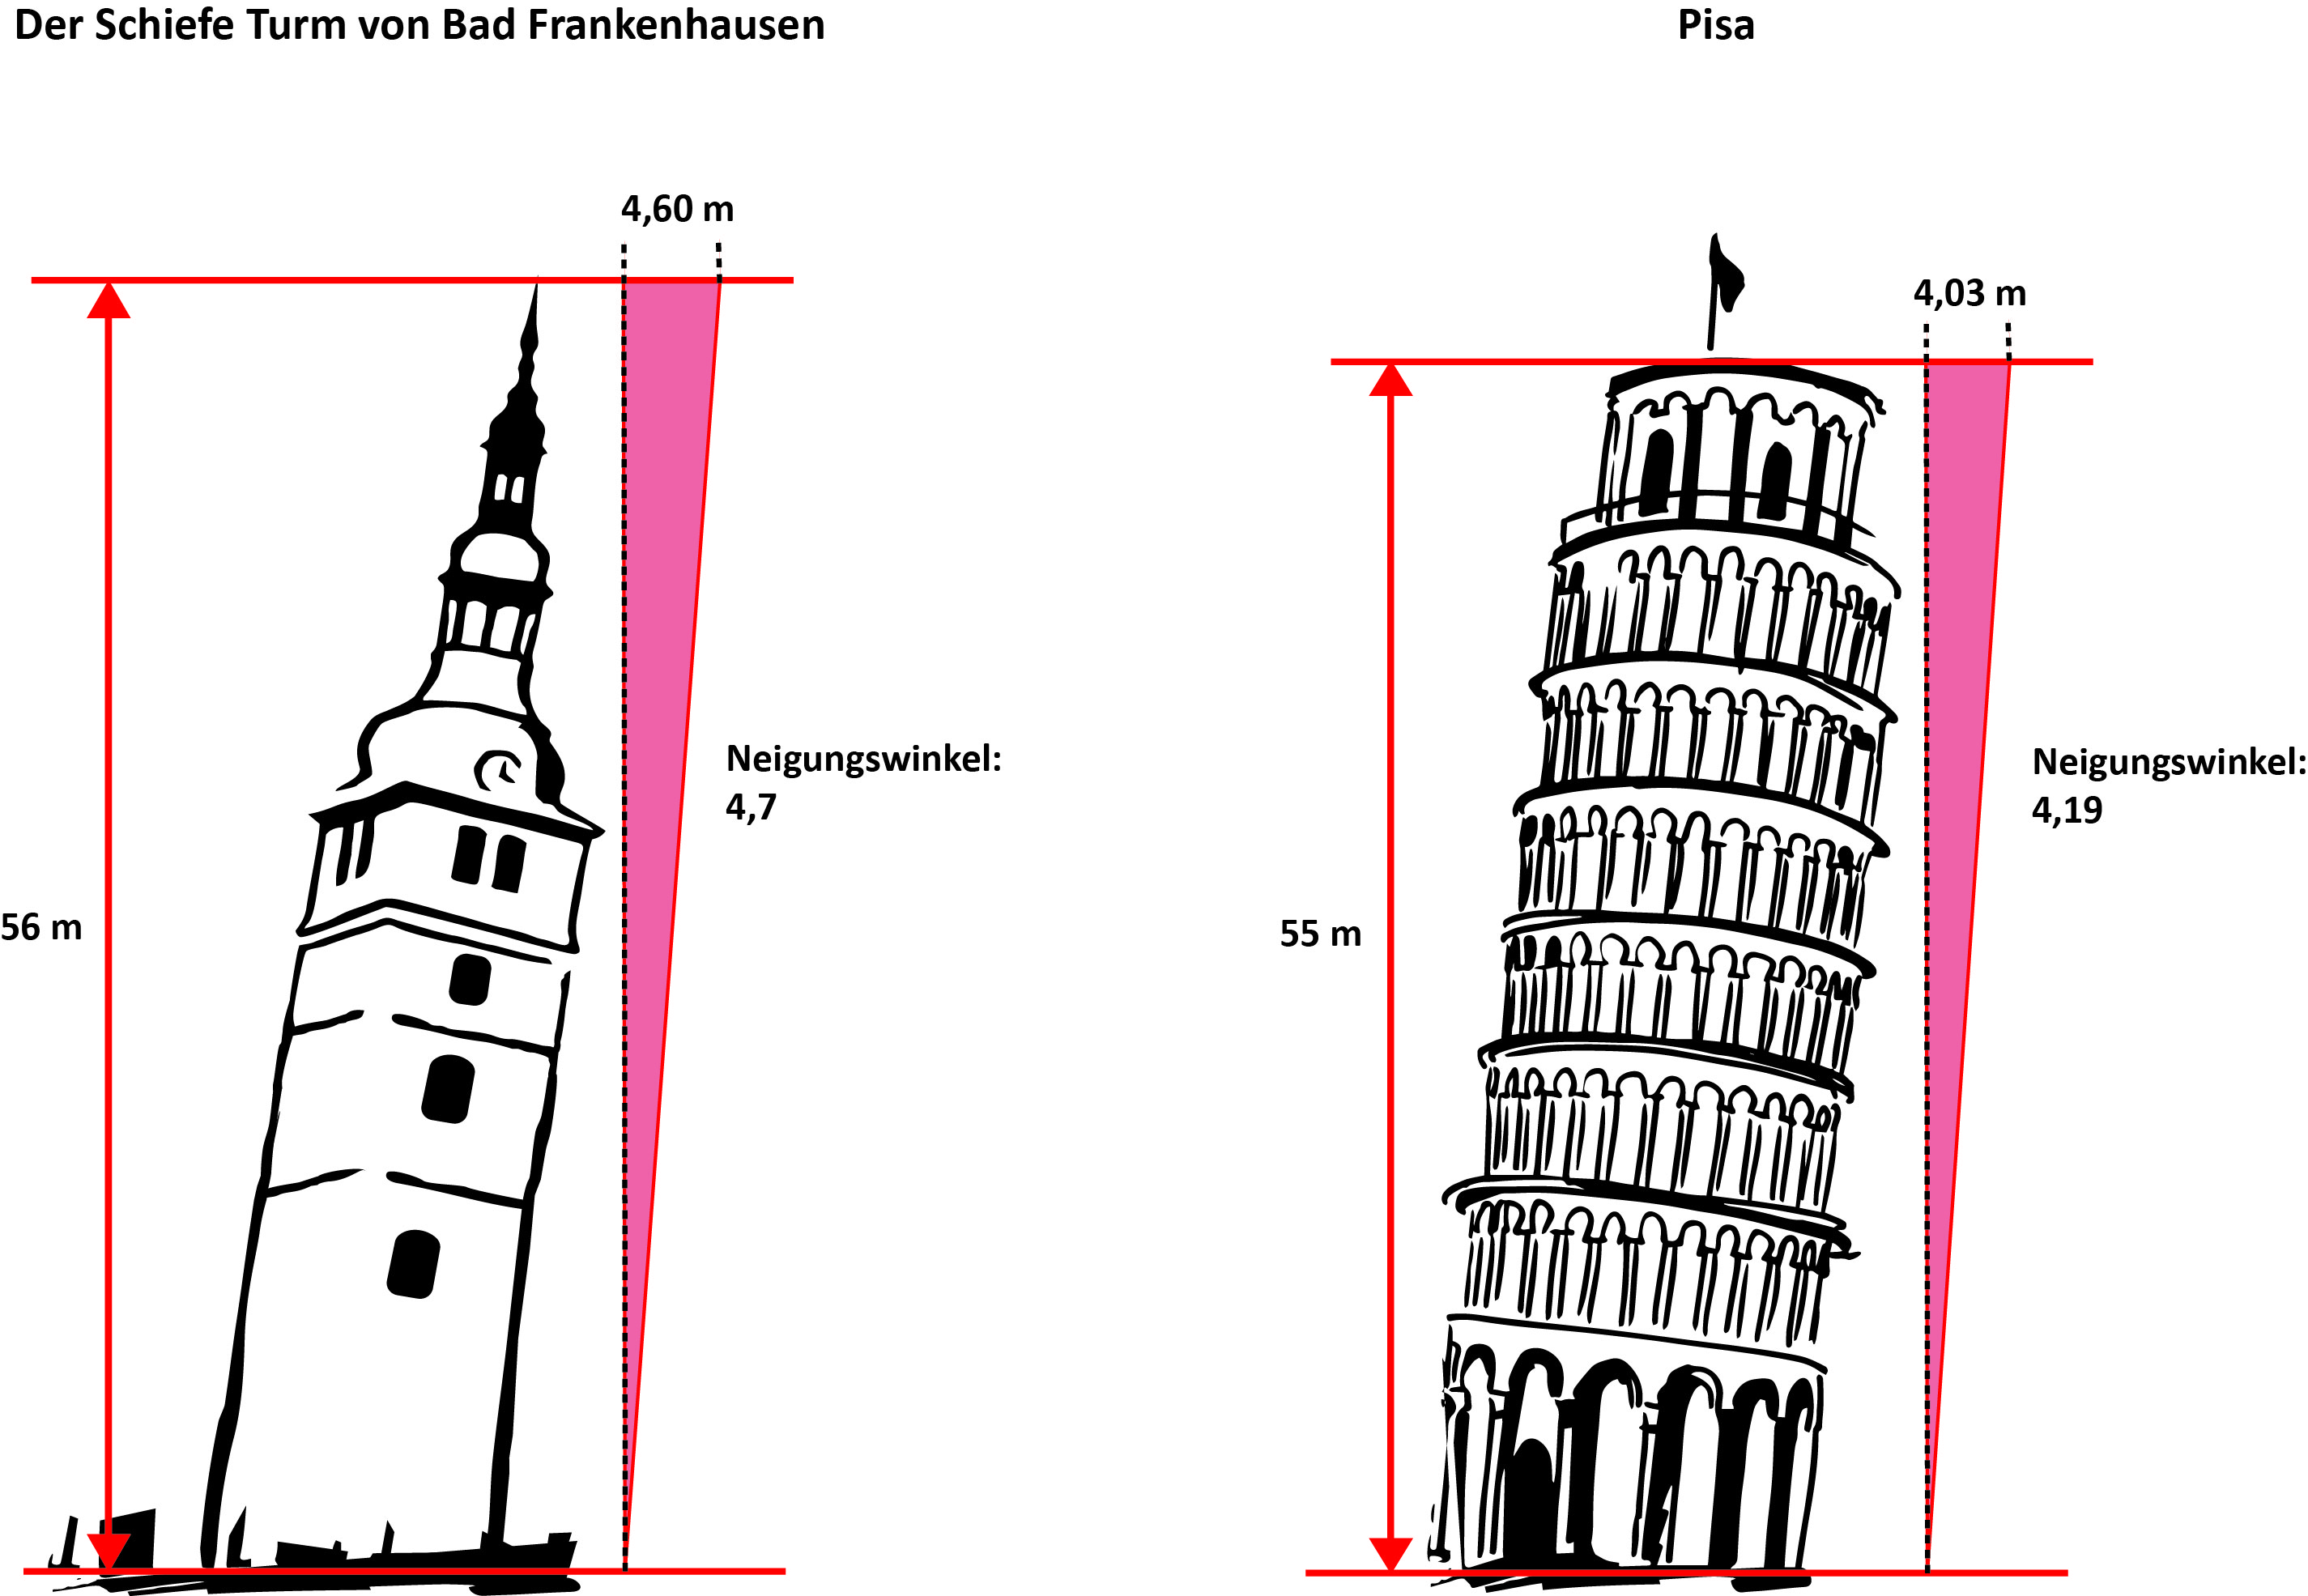 Пизанская башня – падающий шедевр